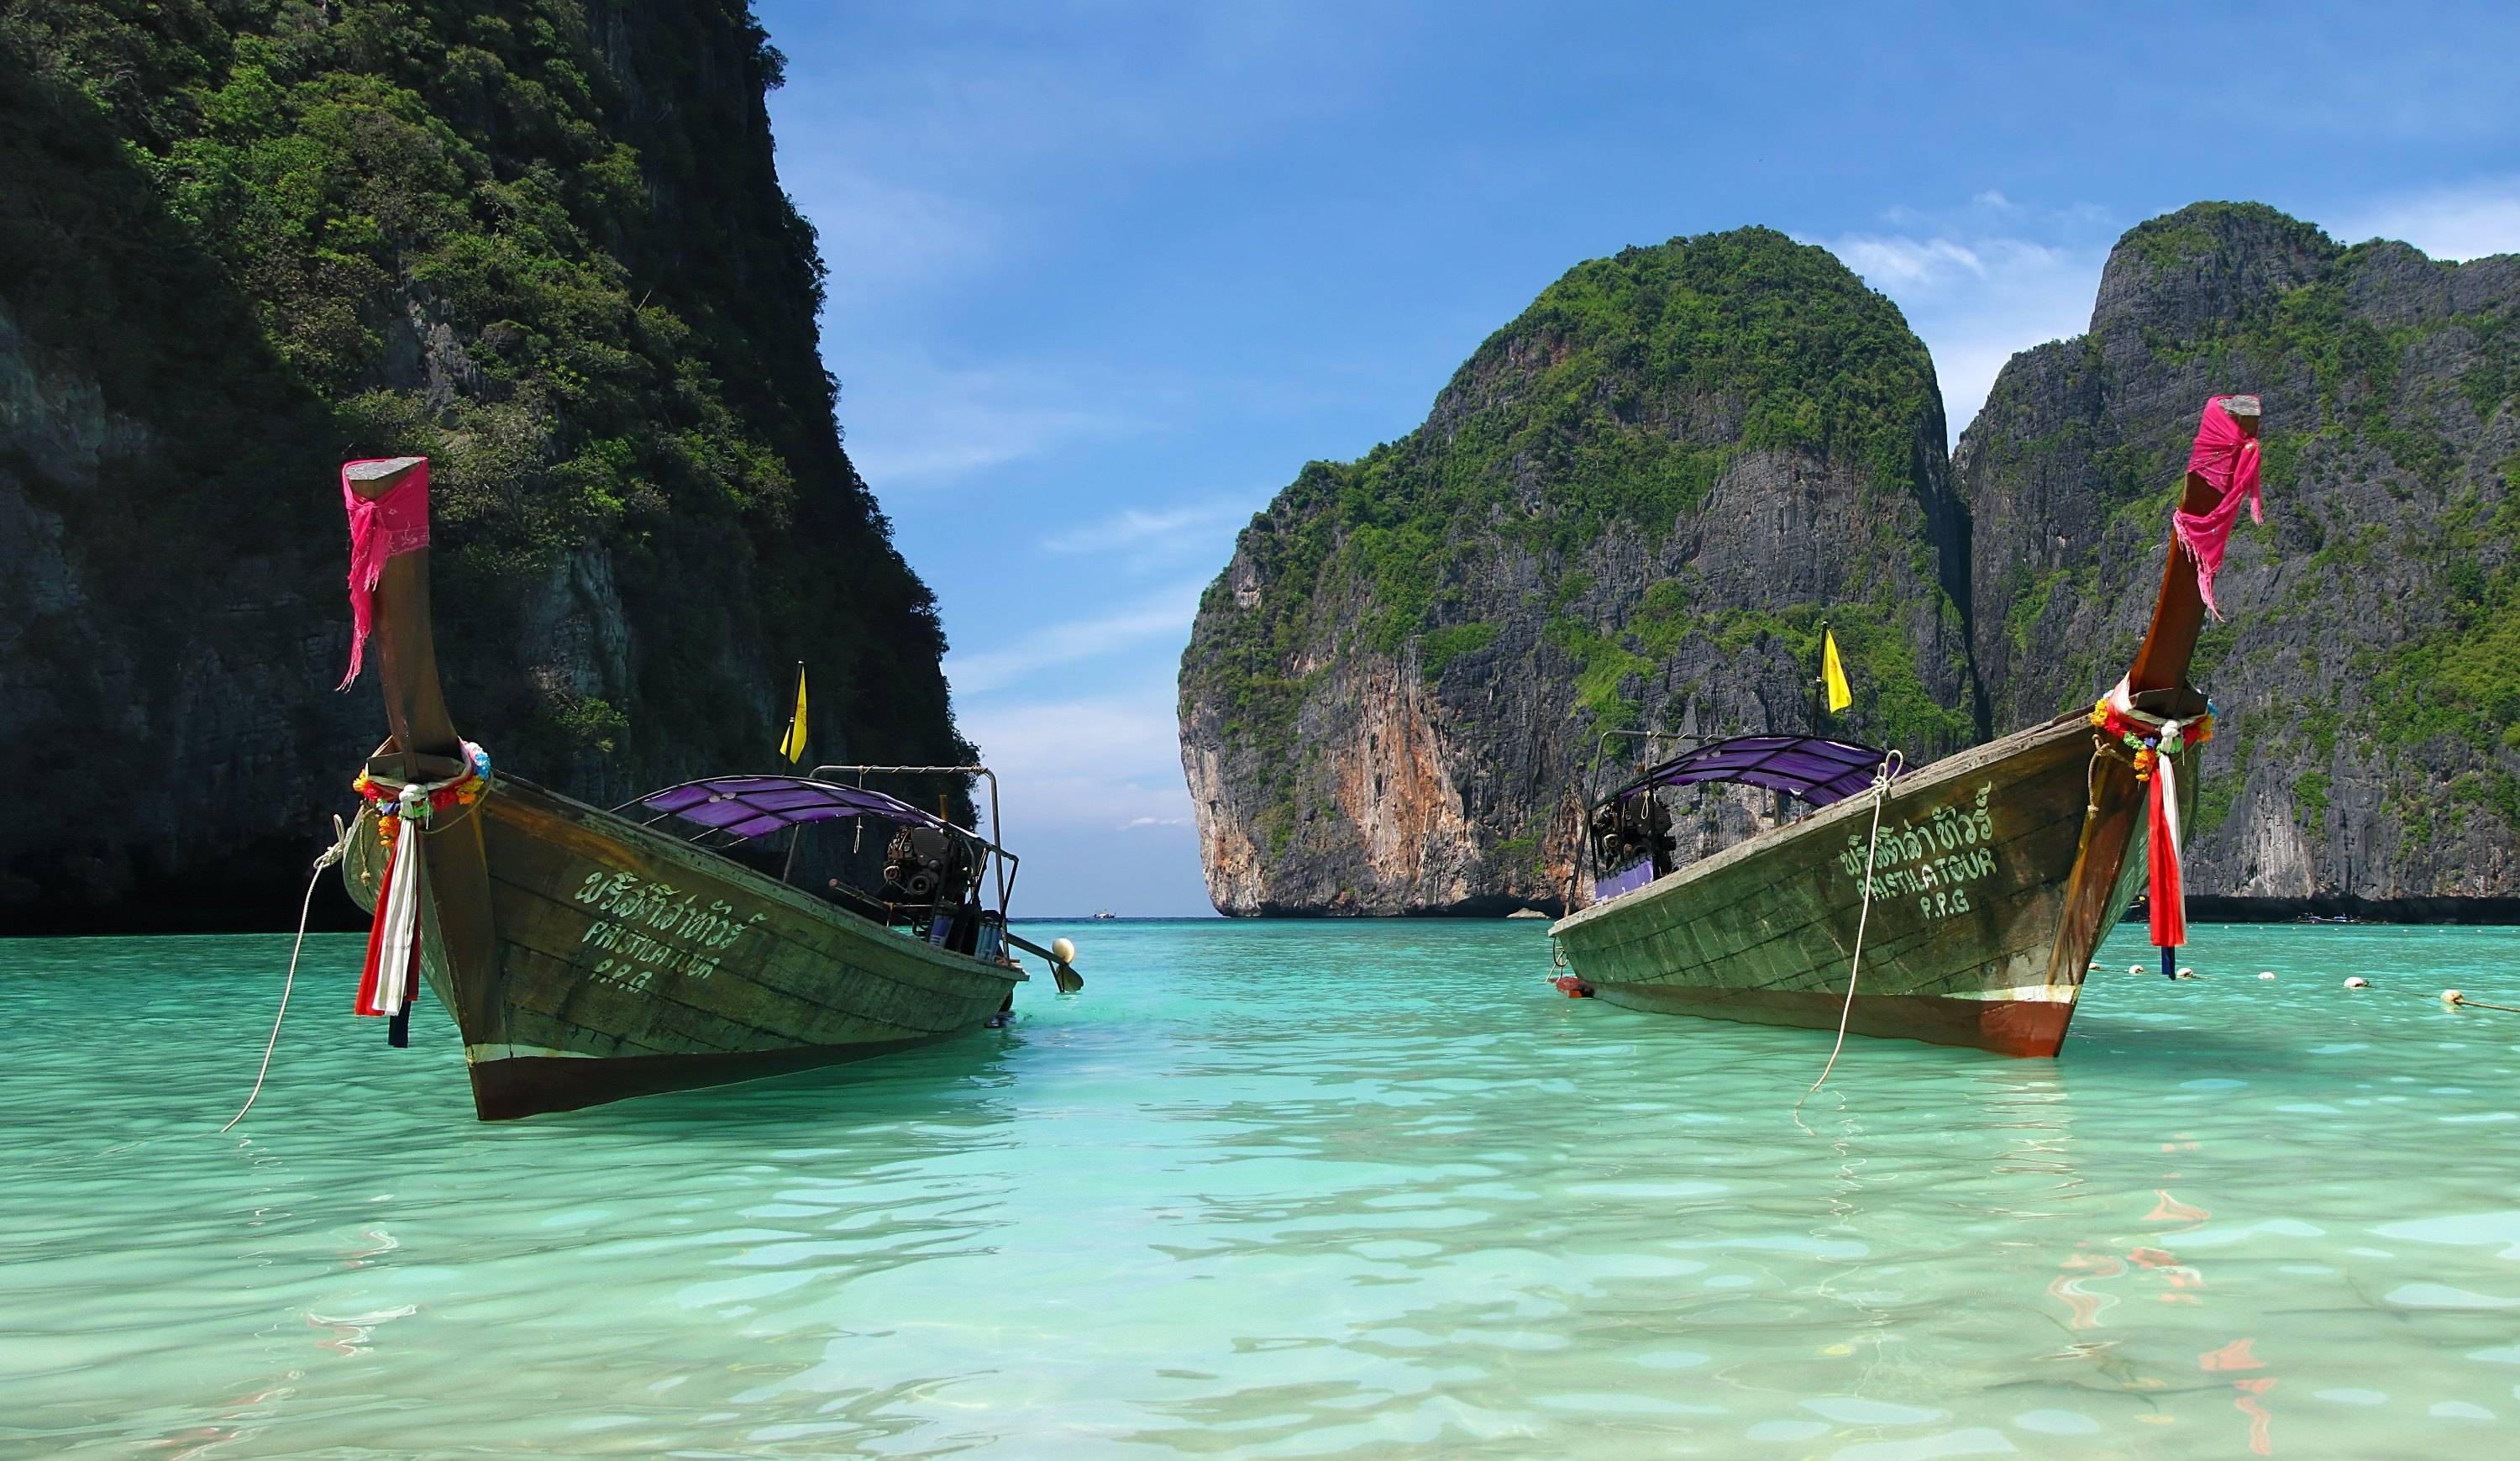 Тайланд или вьетнам: что лучше выбрать для отдыха, сравнение вьетнама и тайланда, где дешевле - 2022